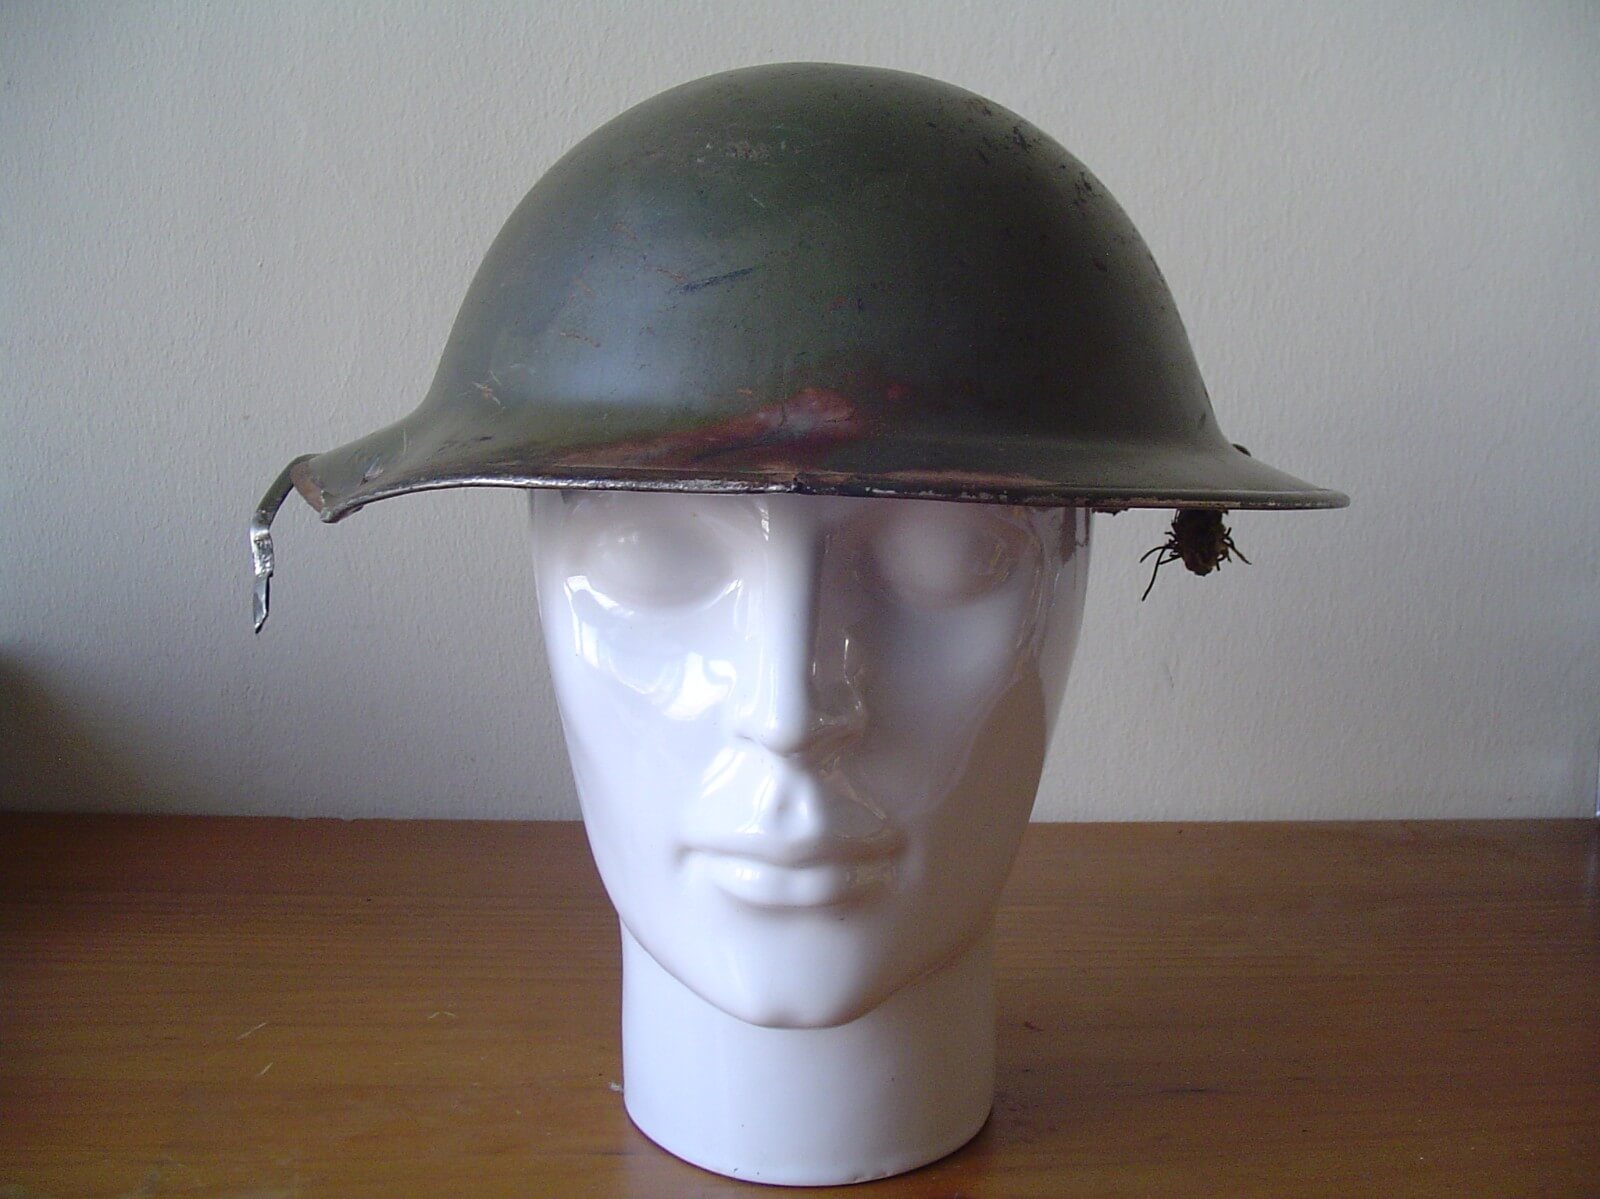 Engelse helm uit de tweede wereldoorlog gevonden in Pijnacker Nootdorp